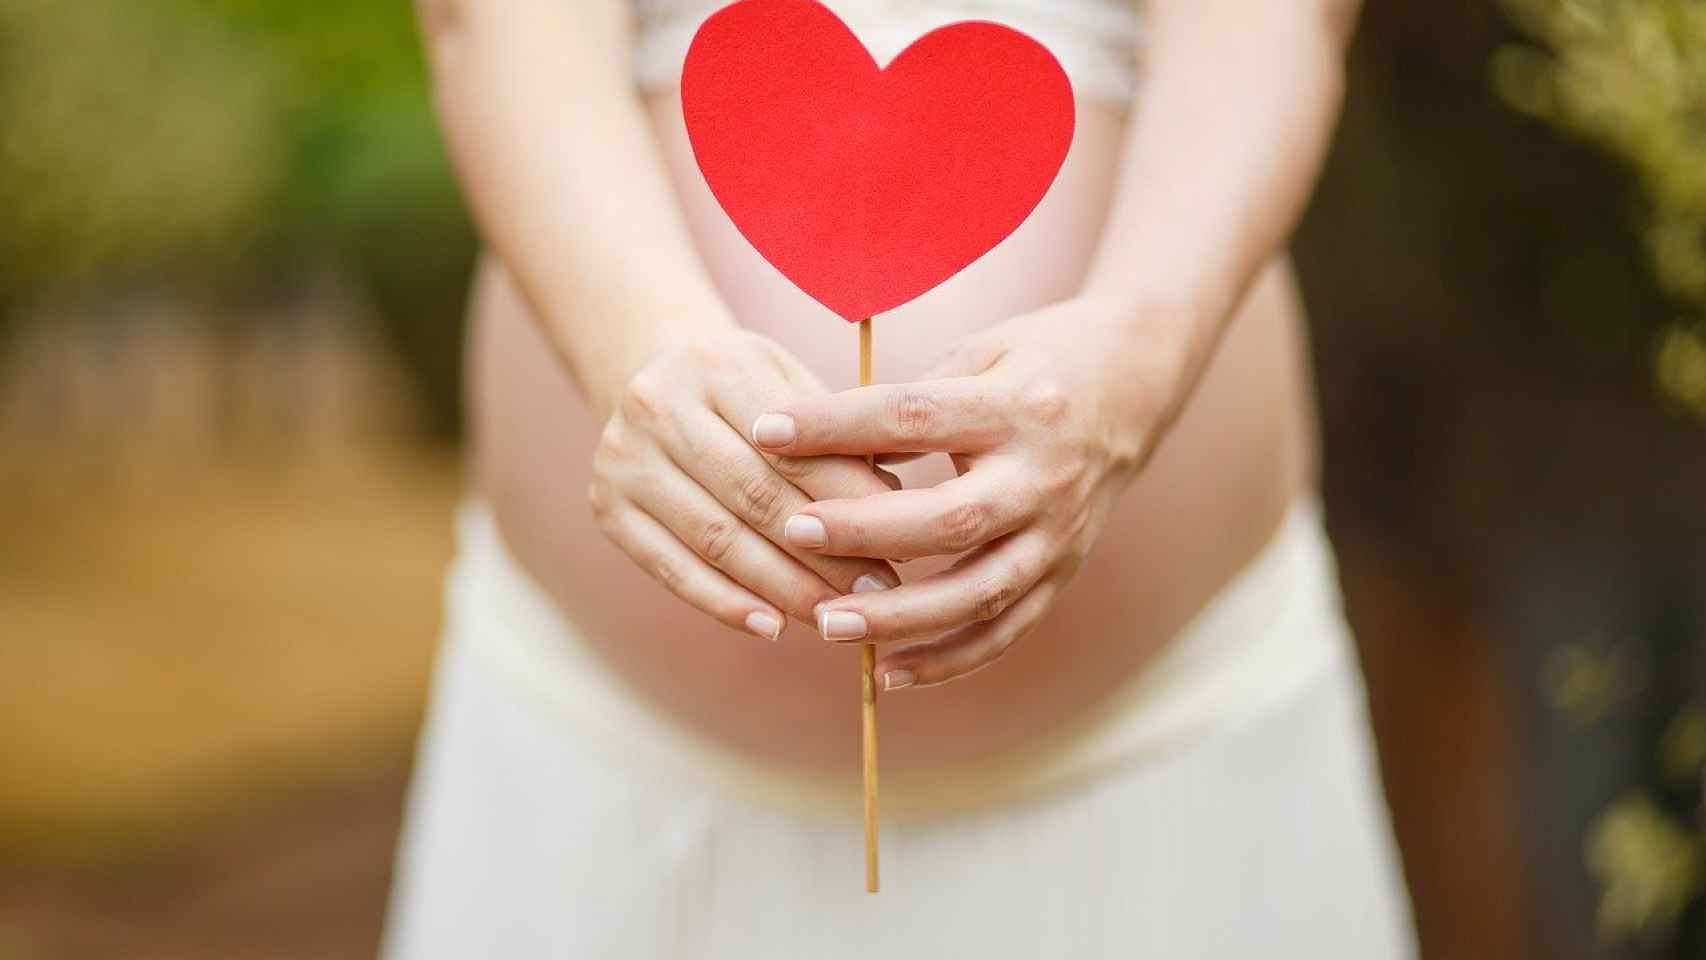 15 semanas de embarazo: ¡se puede chupar el dedito!